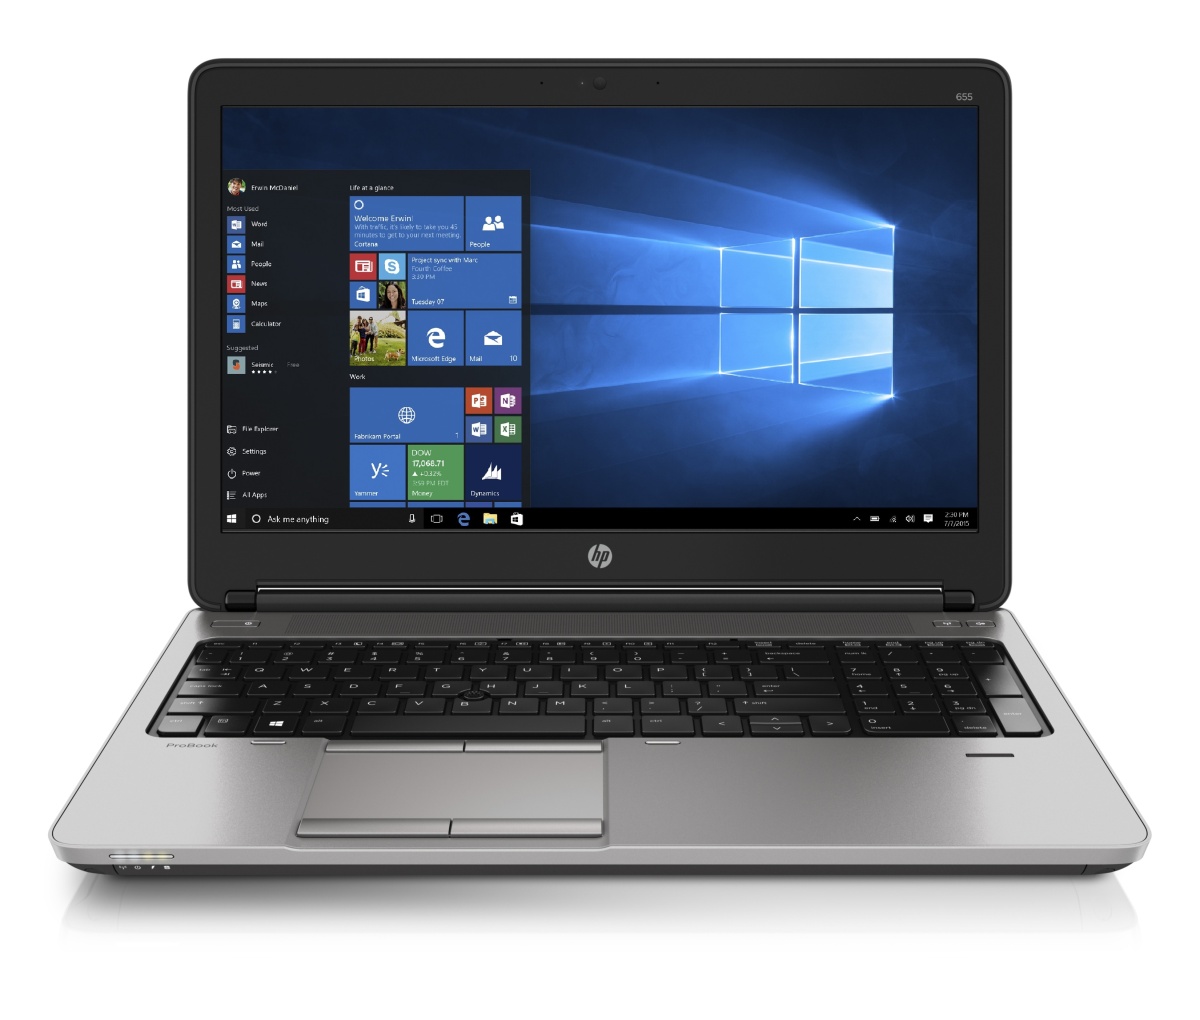 HP ProBook 655 G1 (T4H54ES)